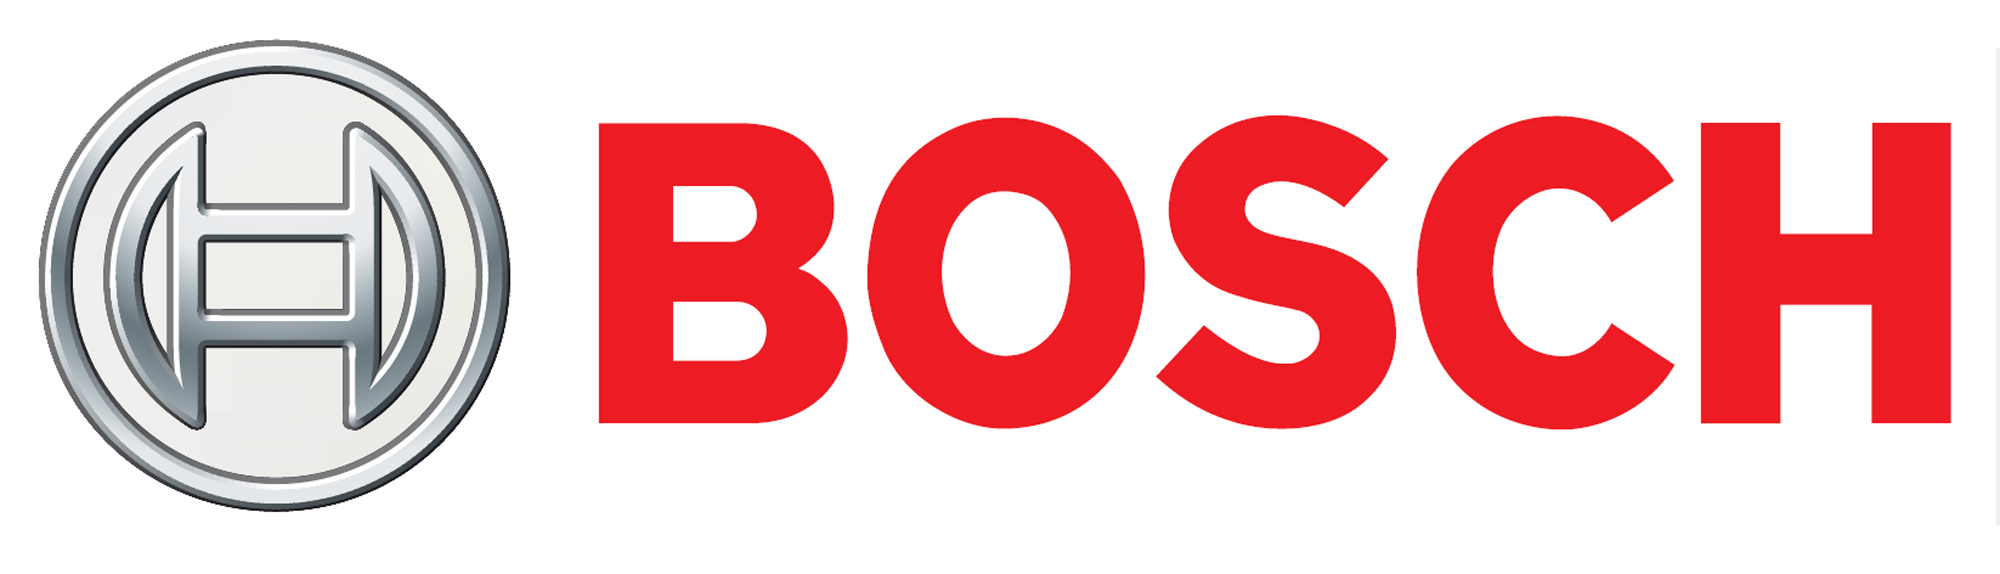 Bosch Transmission Technology